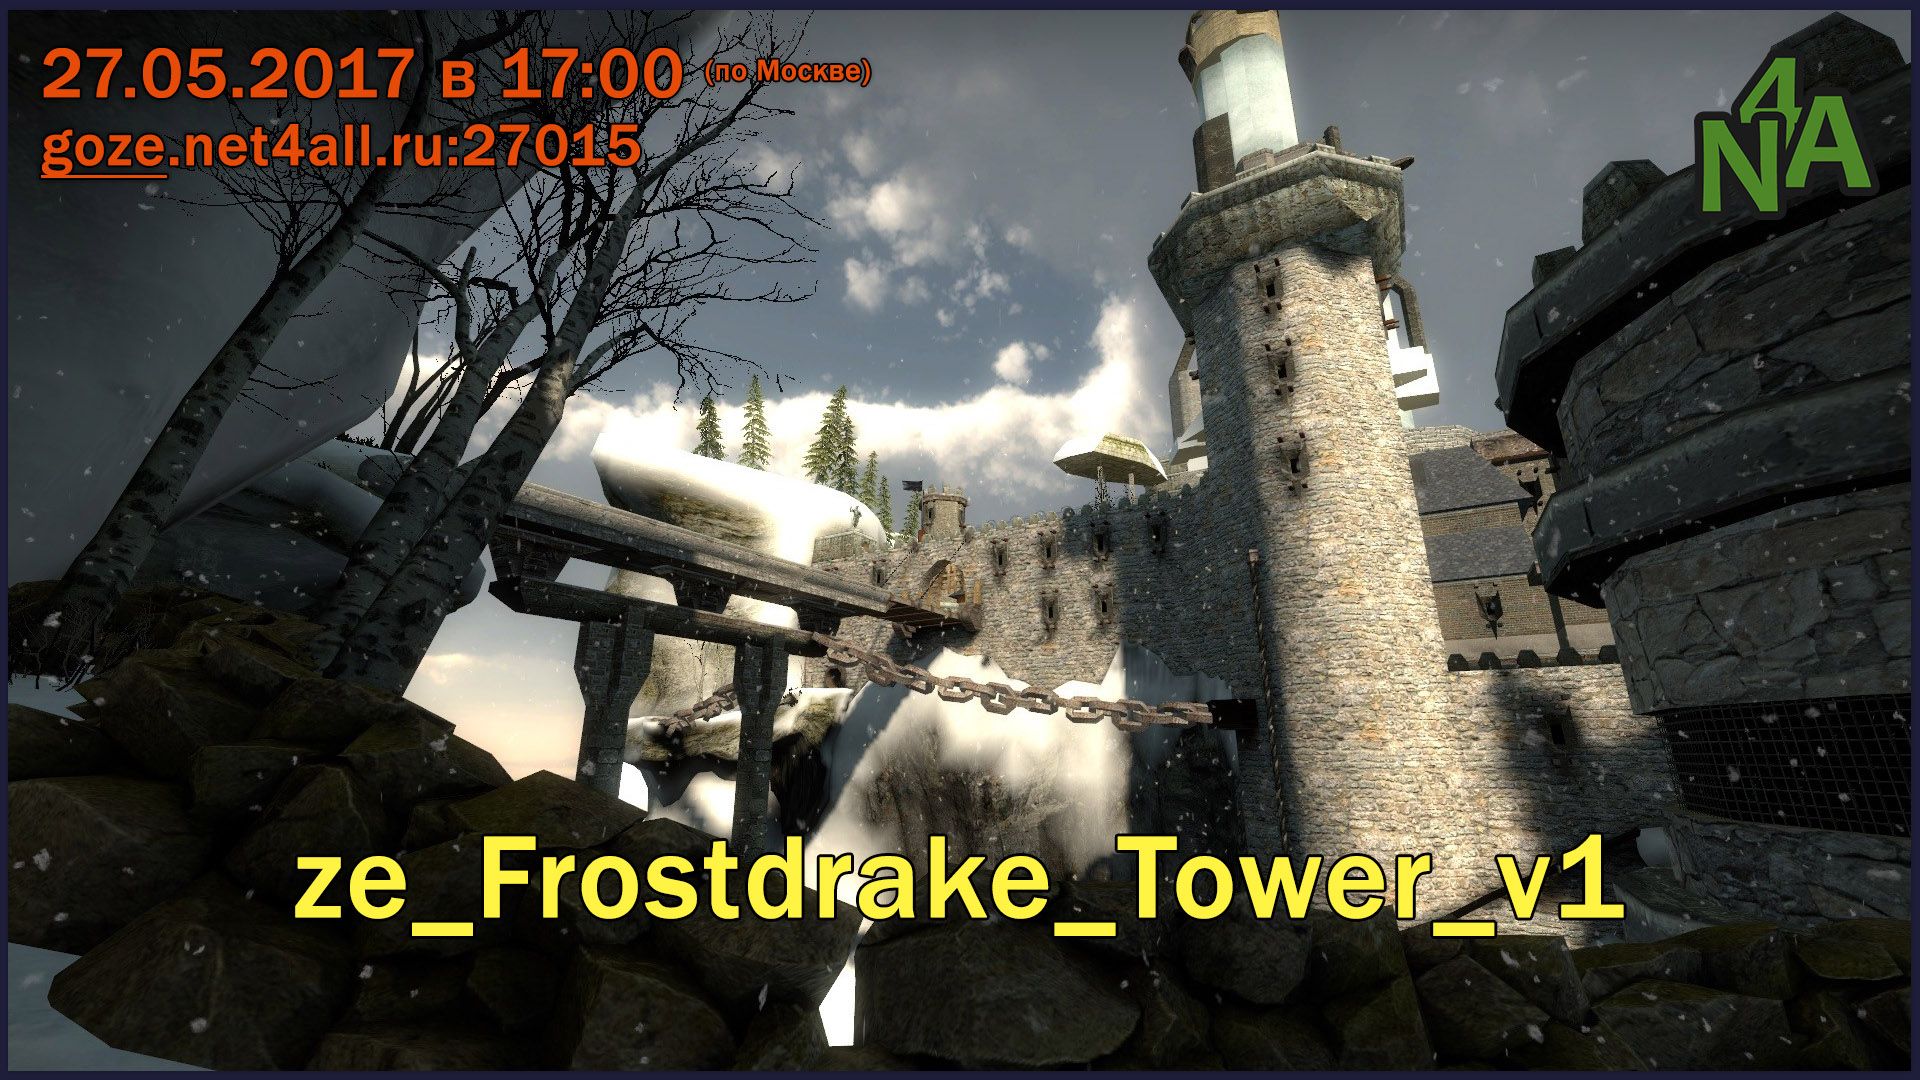 event_csgo_ze_frostdrake_tower_v1.jpg